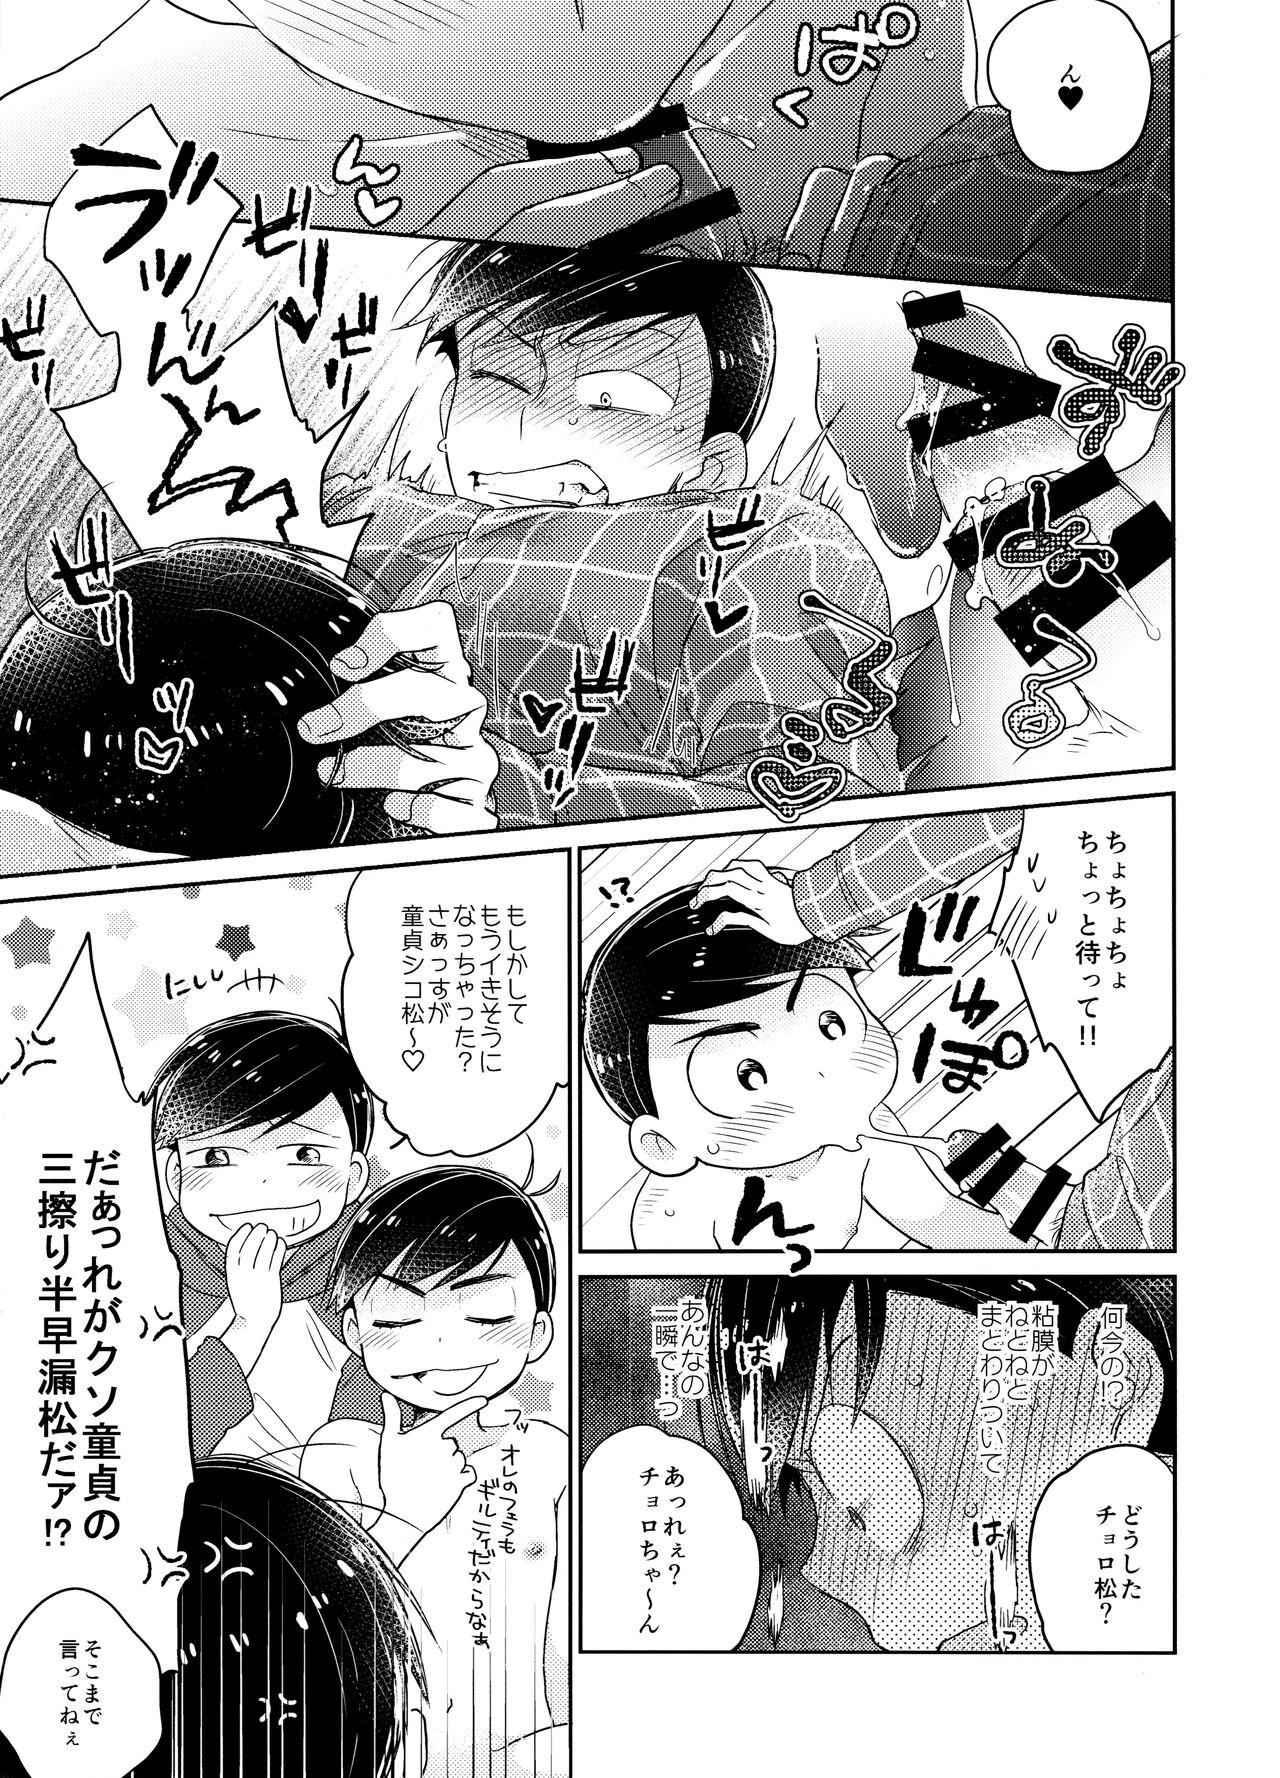 Negra 1, 2 no 3 de Torokete Ecchi - Osomatsu san Masterbate - Page 10